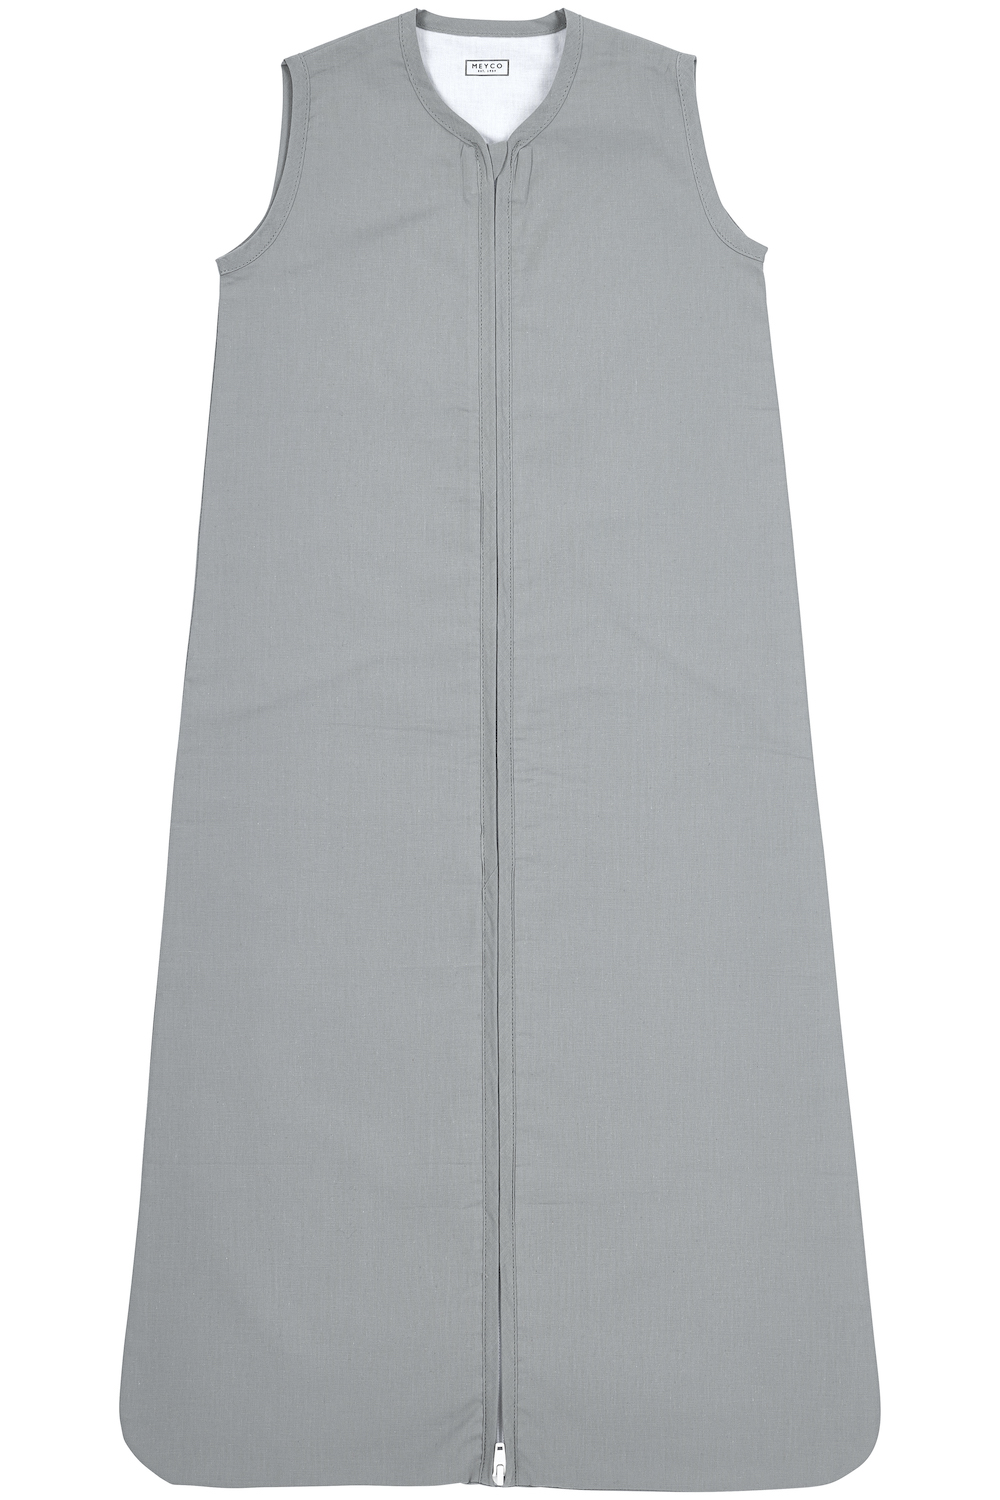 Schlafsack Uni - grey - 110cm